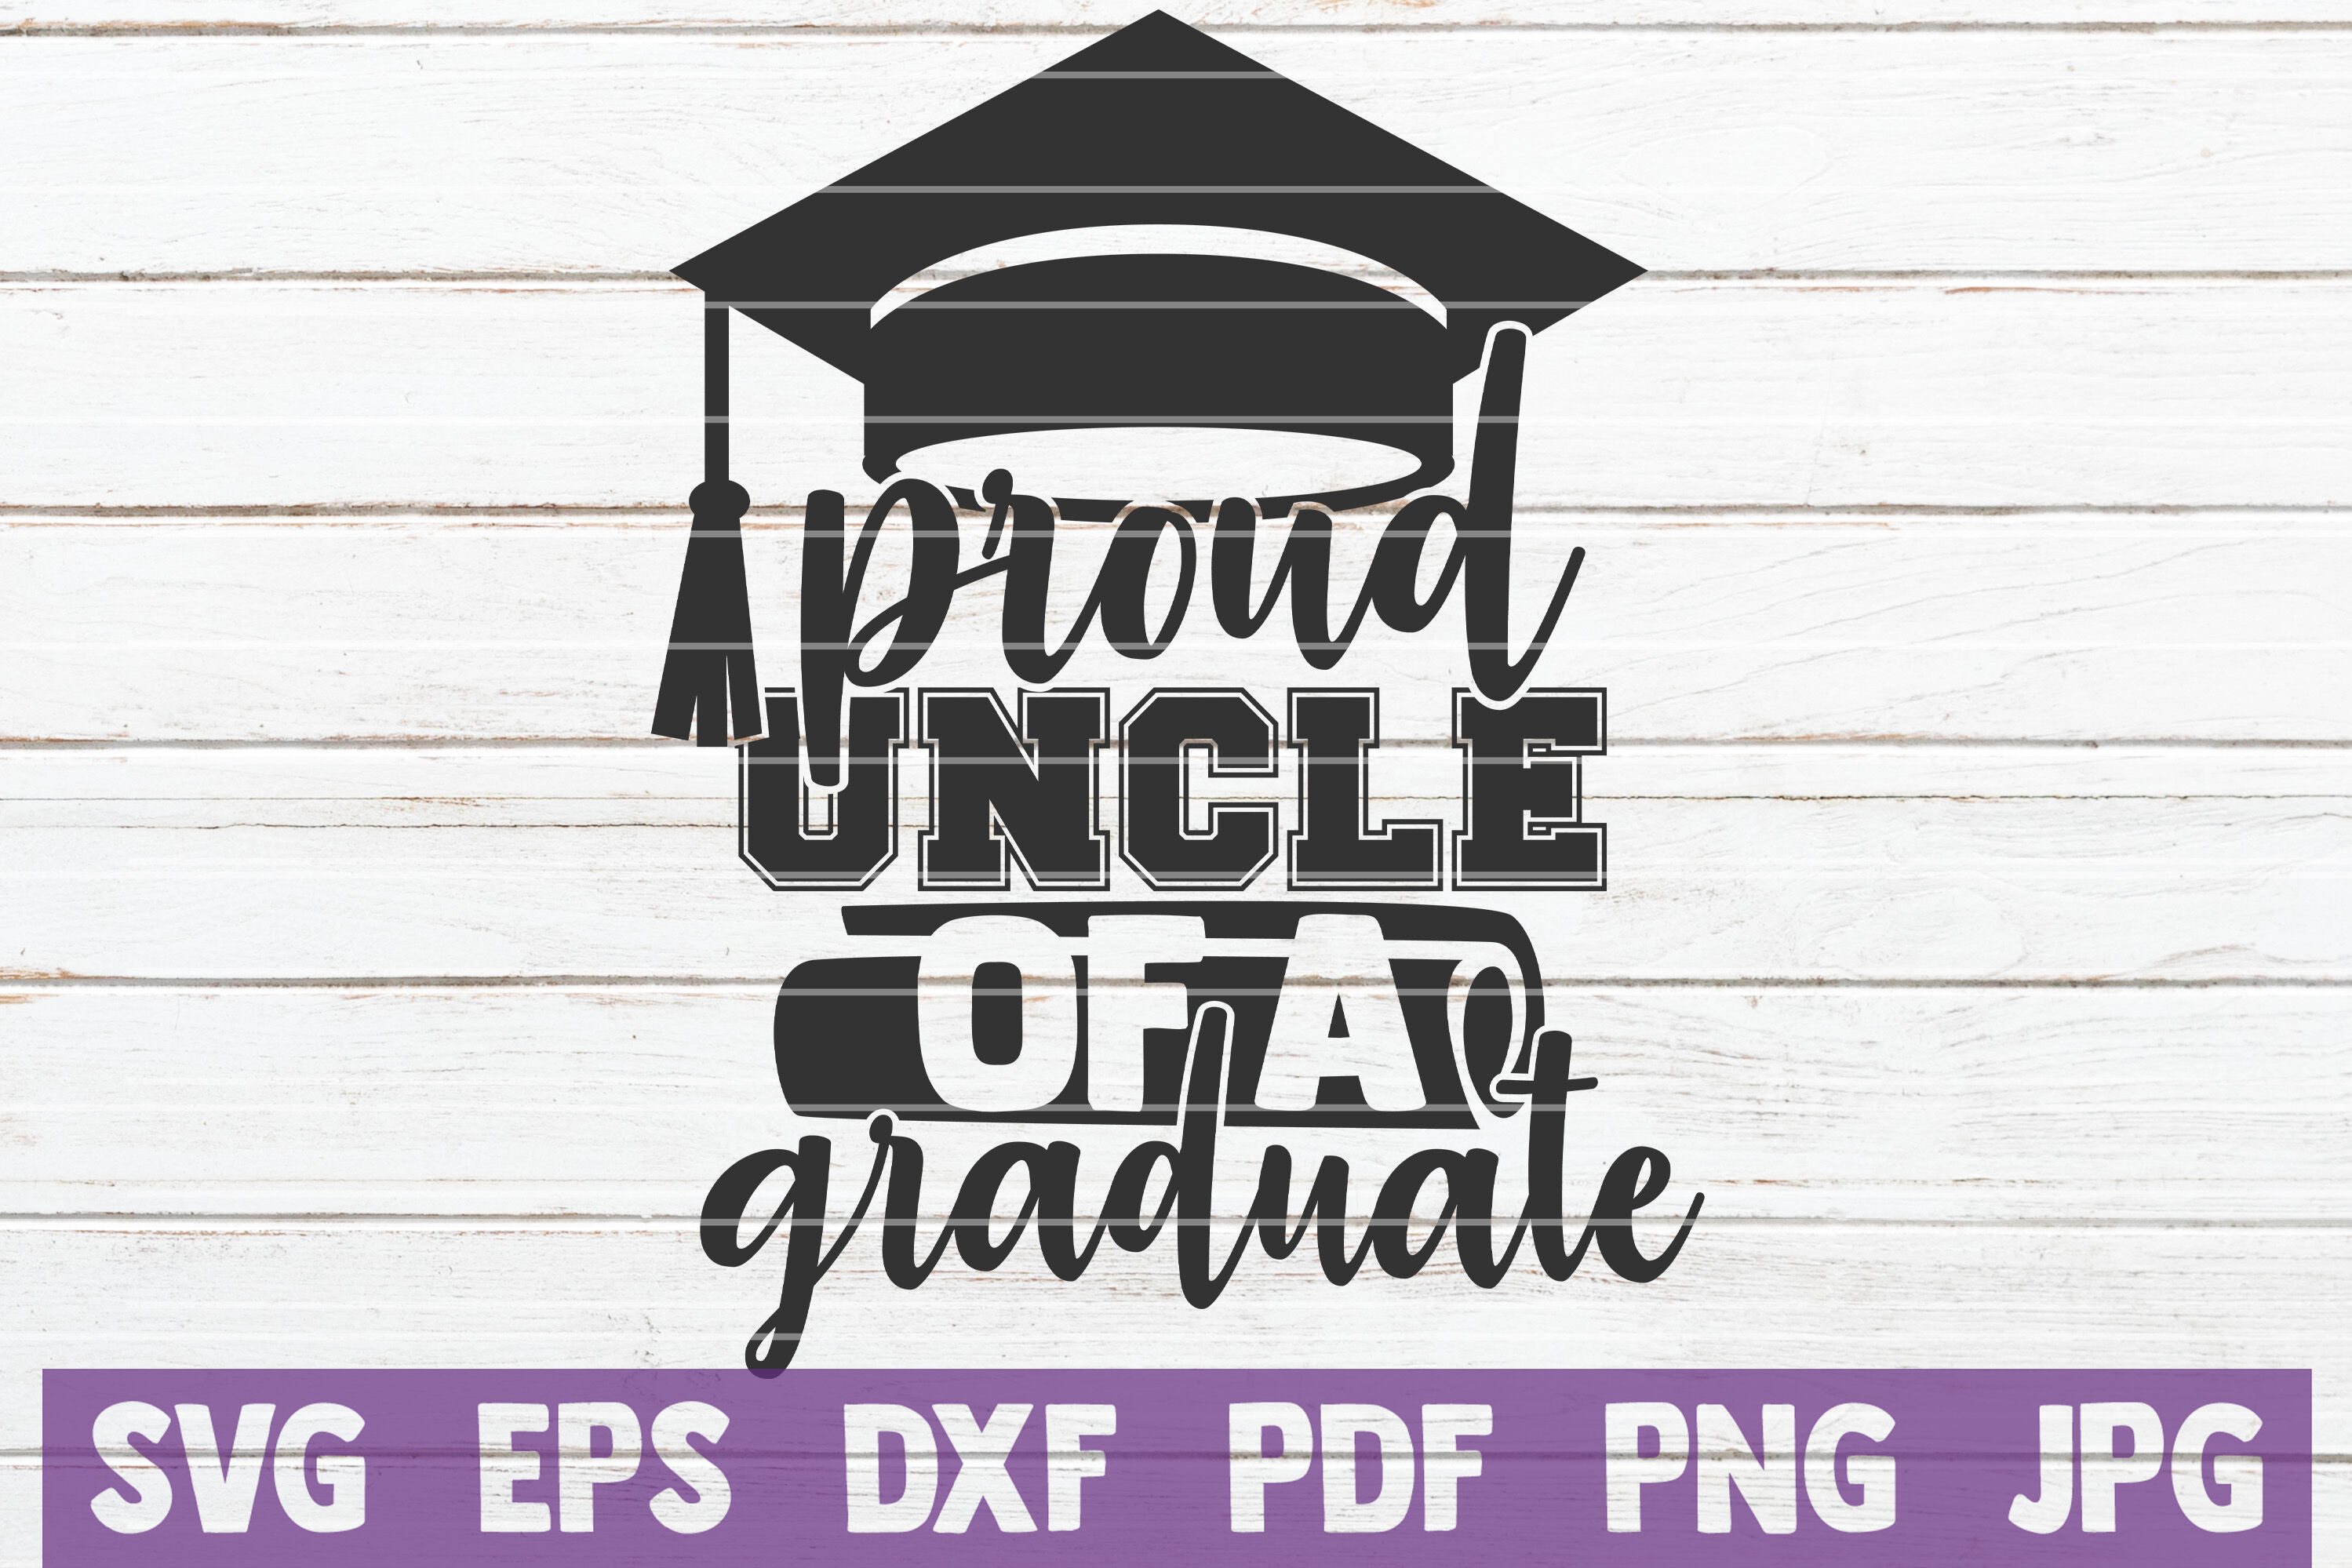 Proud Family Of A Graduate SVG Bundle | Graduation SVG Cut ...